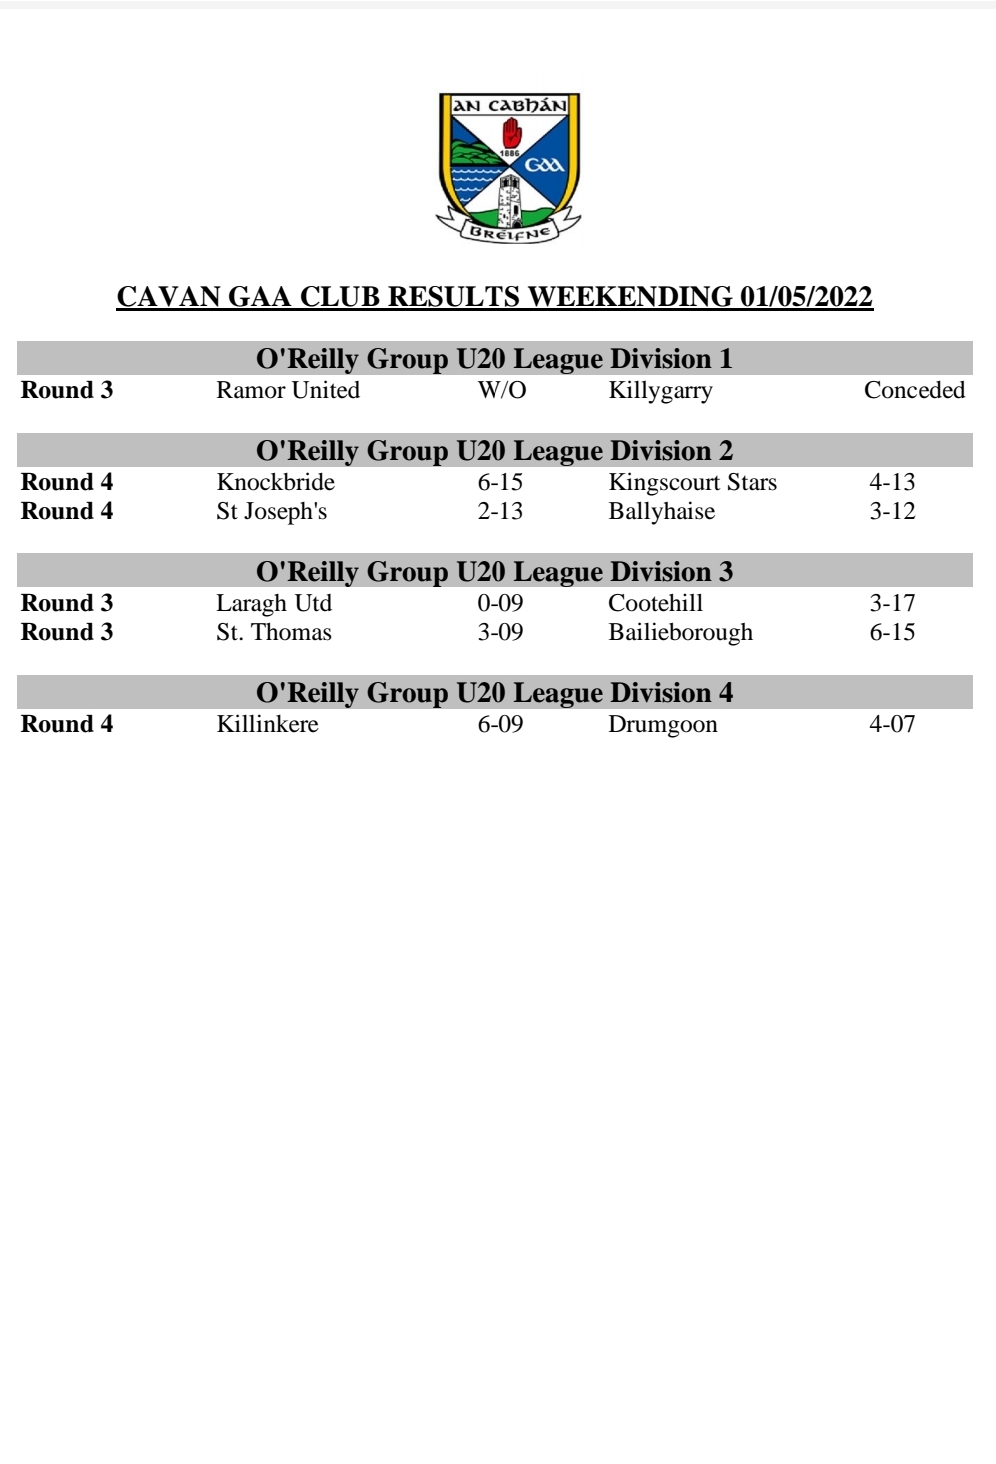 Cavan GAA U20 Results and Tables Weekending 01/05/2022